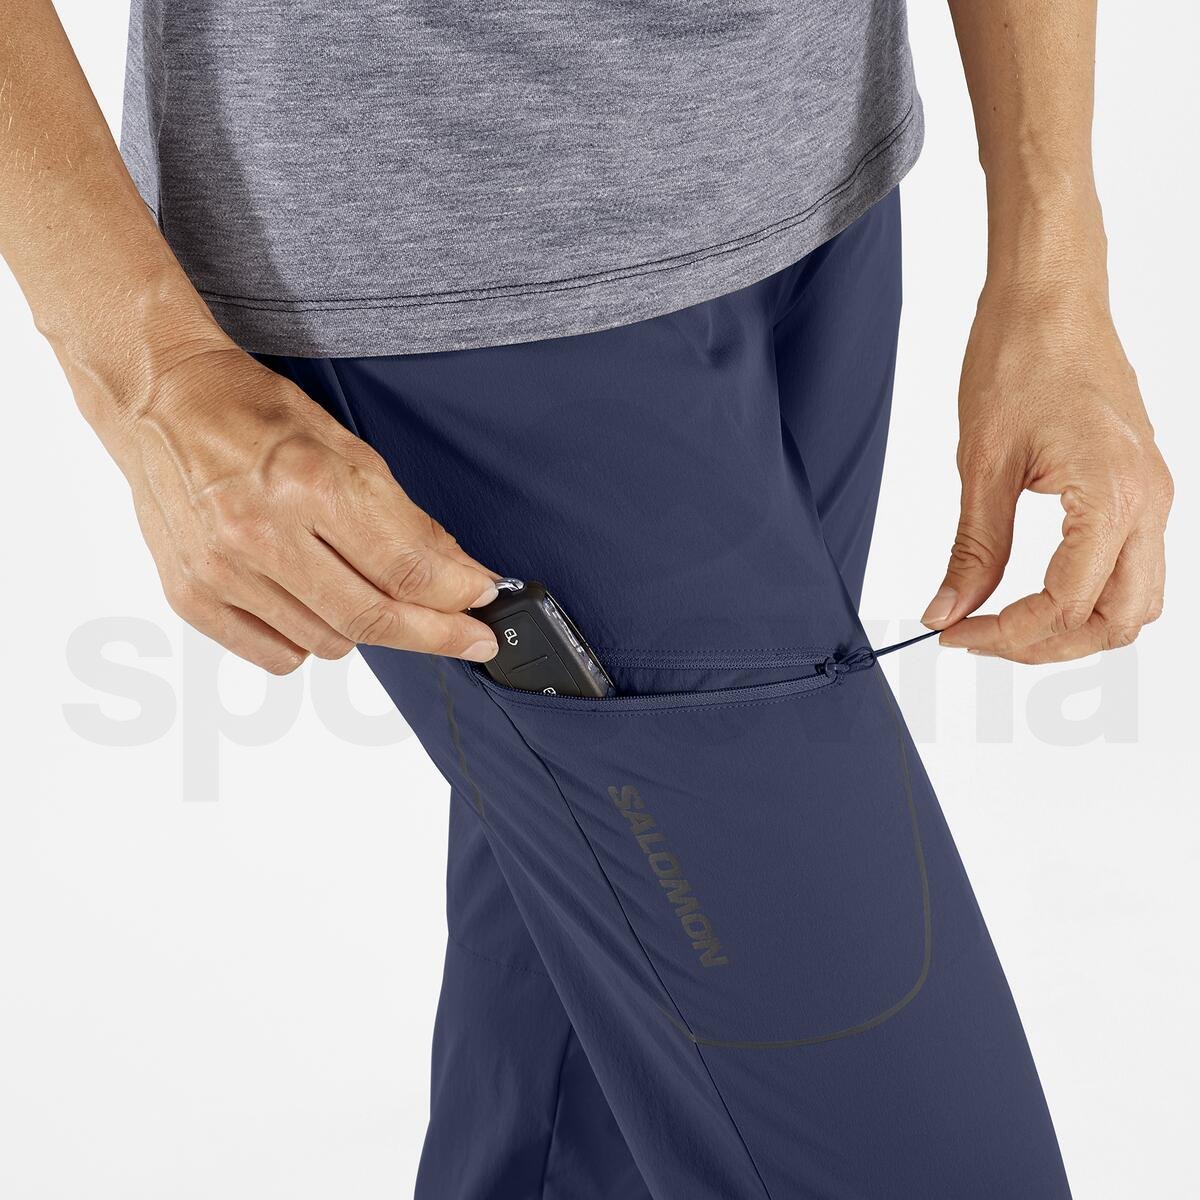 Kalhoty Salomon Wayfarer Pants W - modrá (standardní délka)